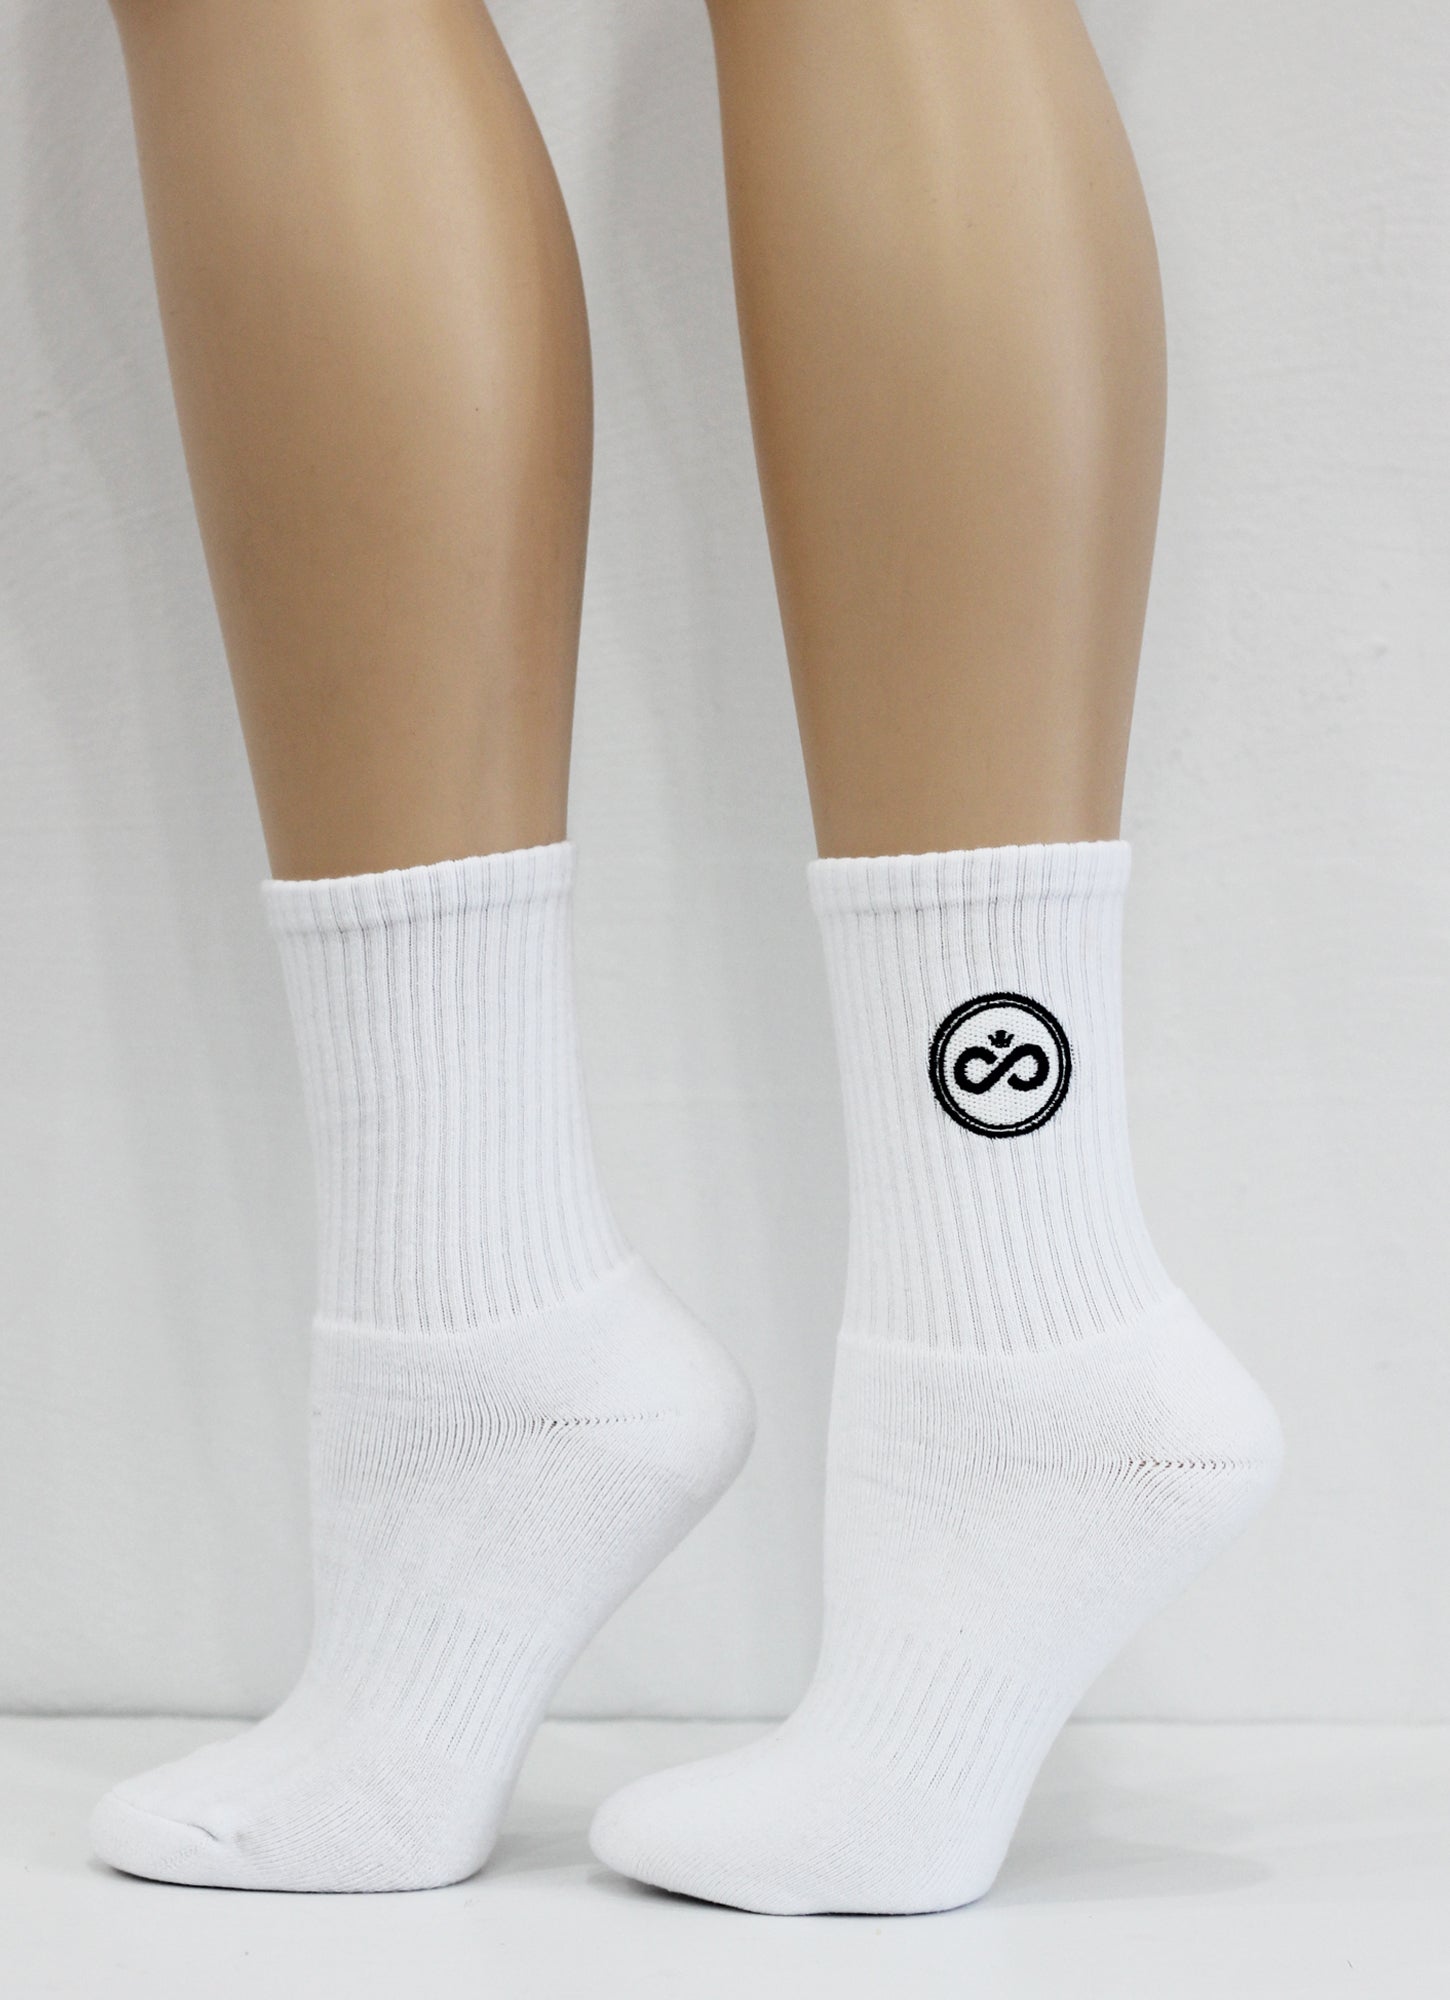 ecogriffe-chausette-origine-blanc-court-logo-noir-01 copie